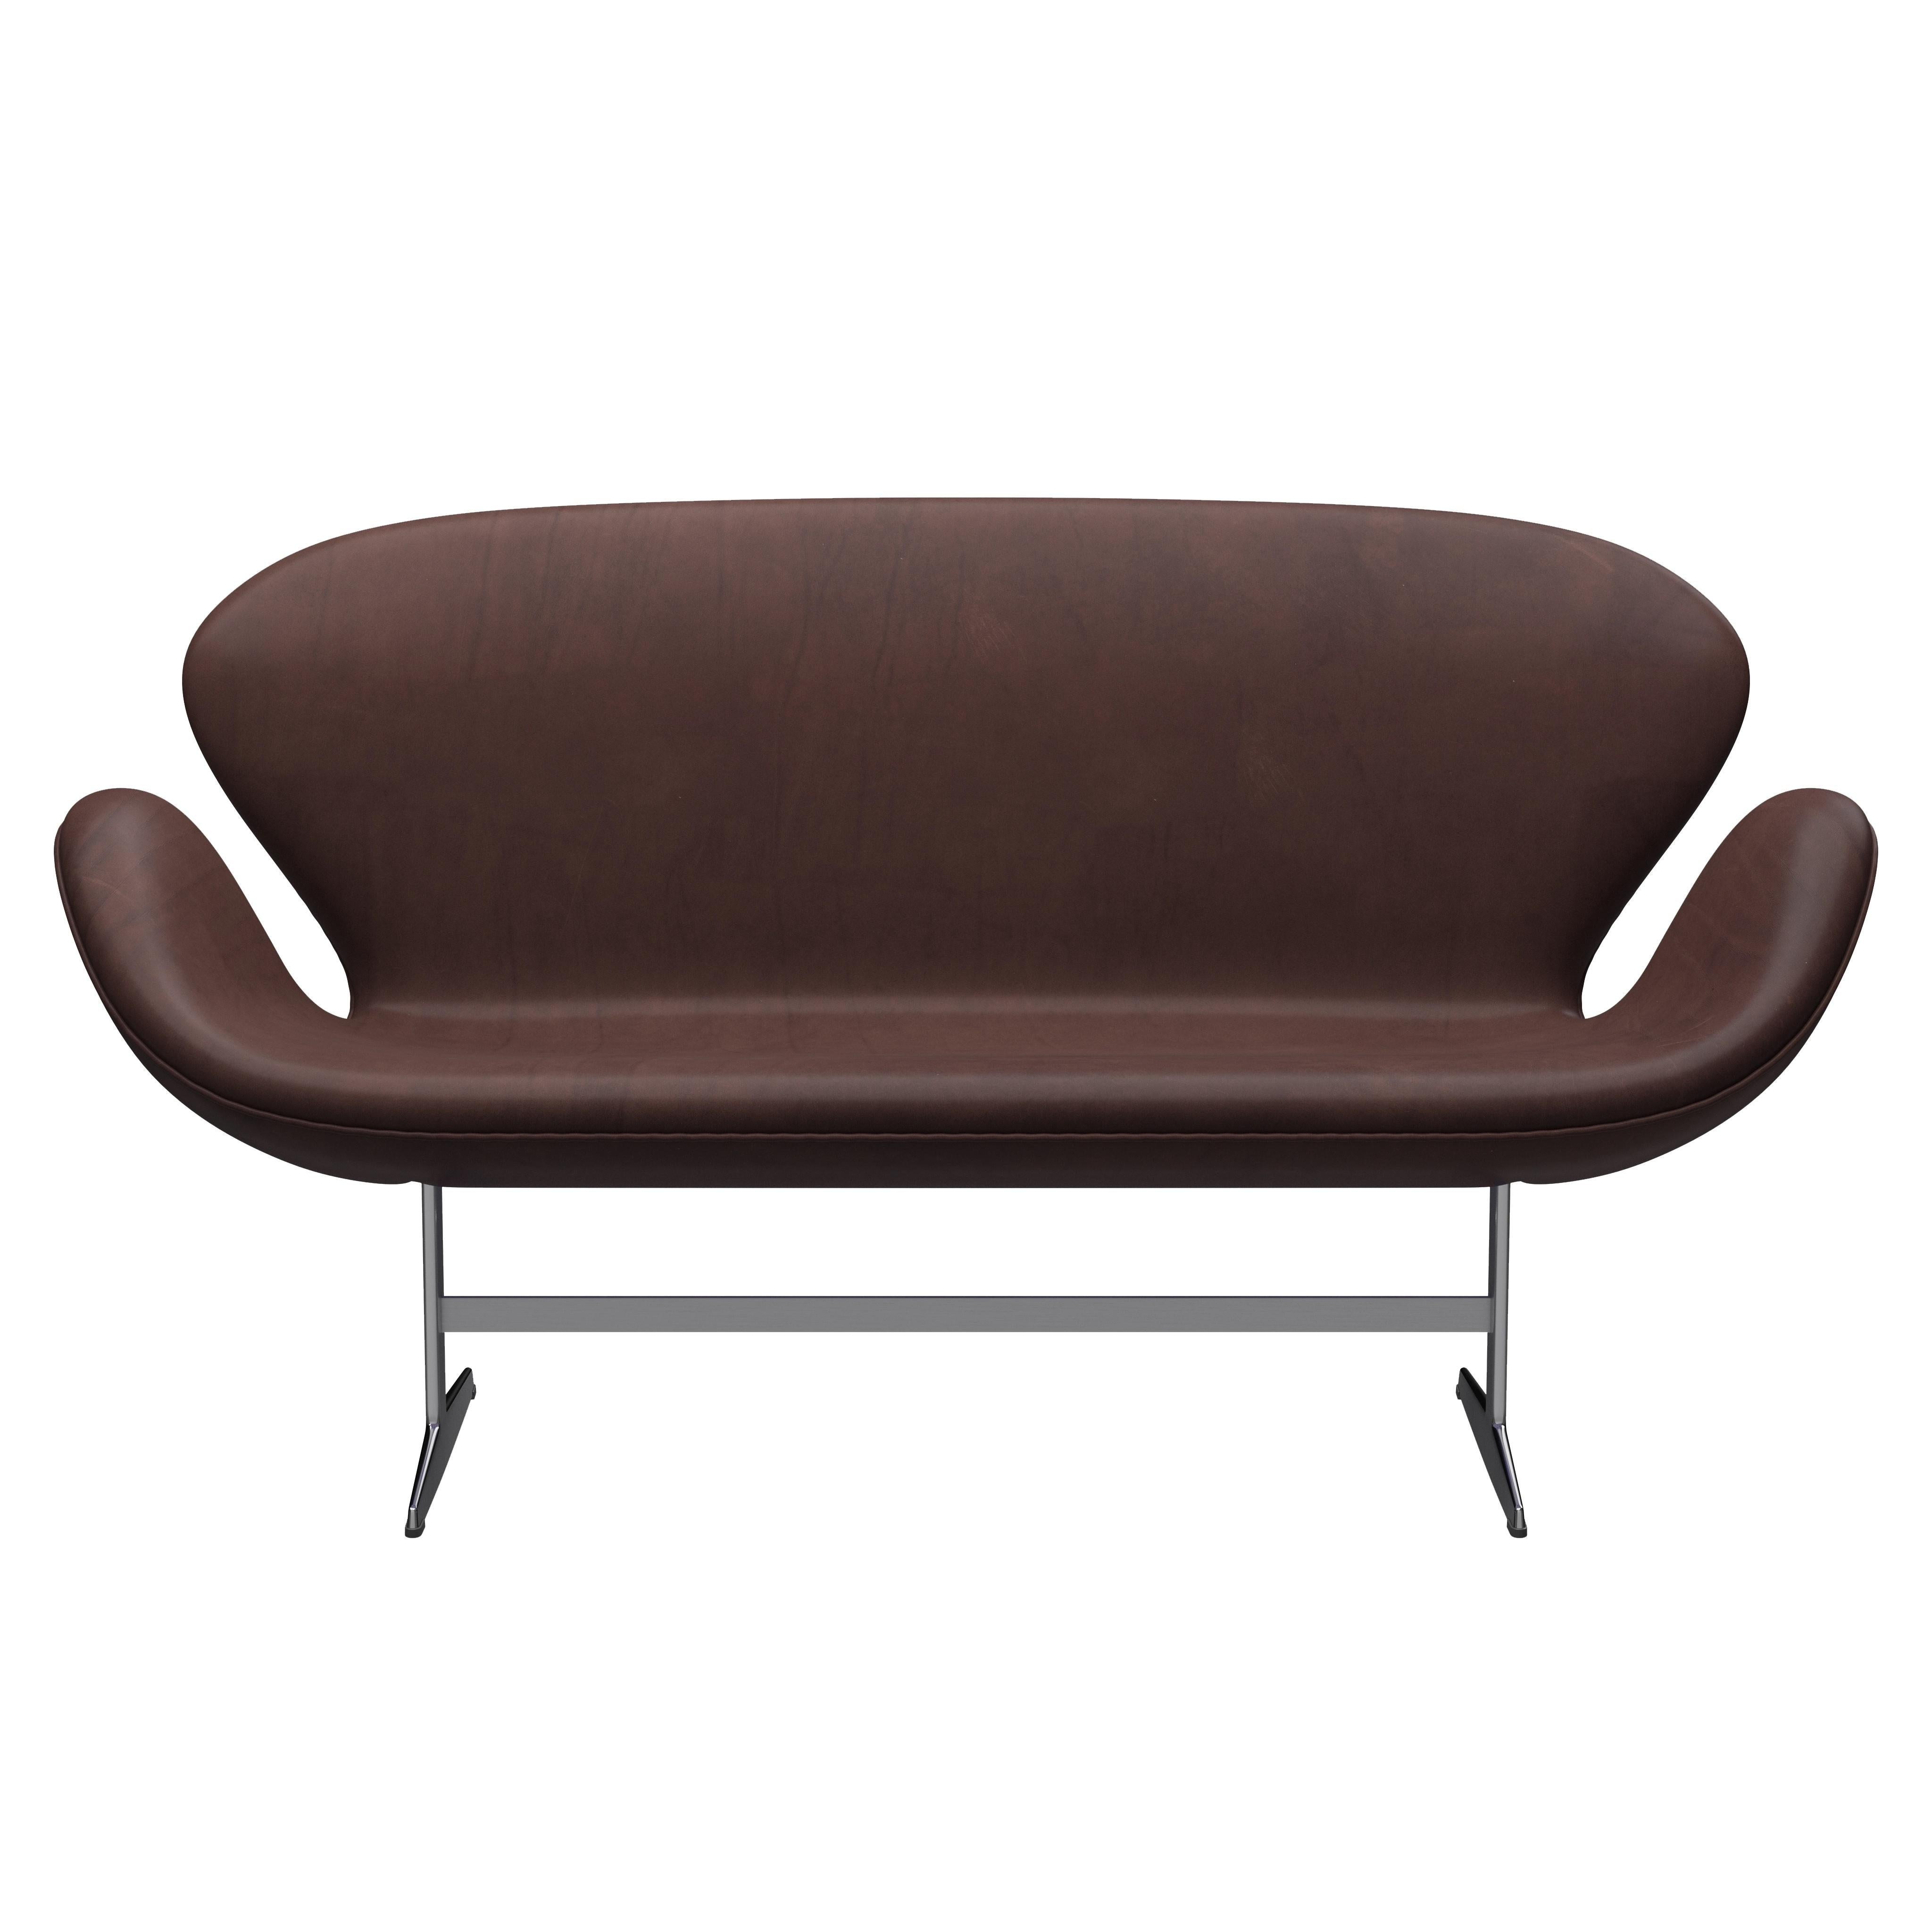 Arne Jacobsen 'Swan' Sofa for Fritz Hansen in Leather Upholstery (Cat. 5) For Sale 2